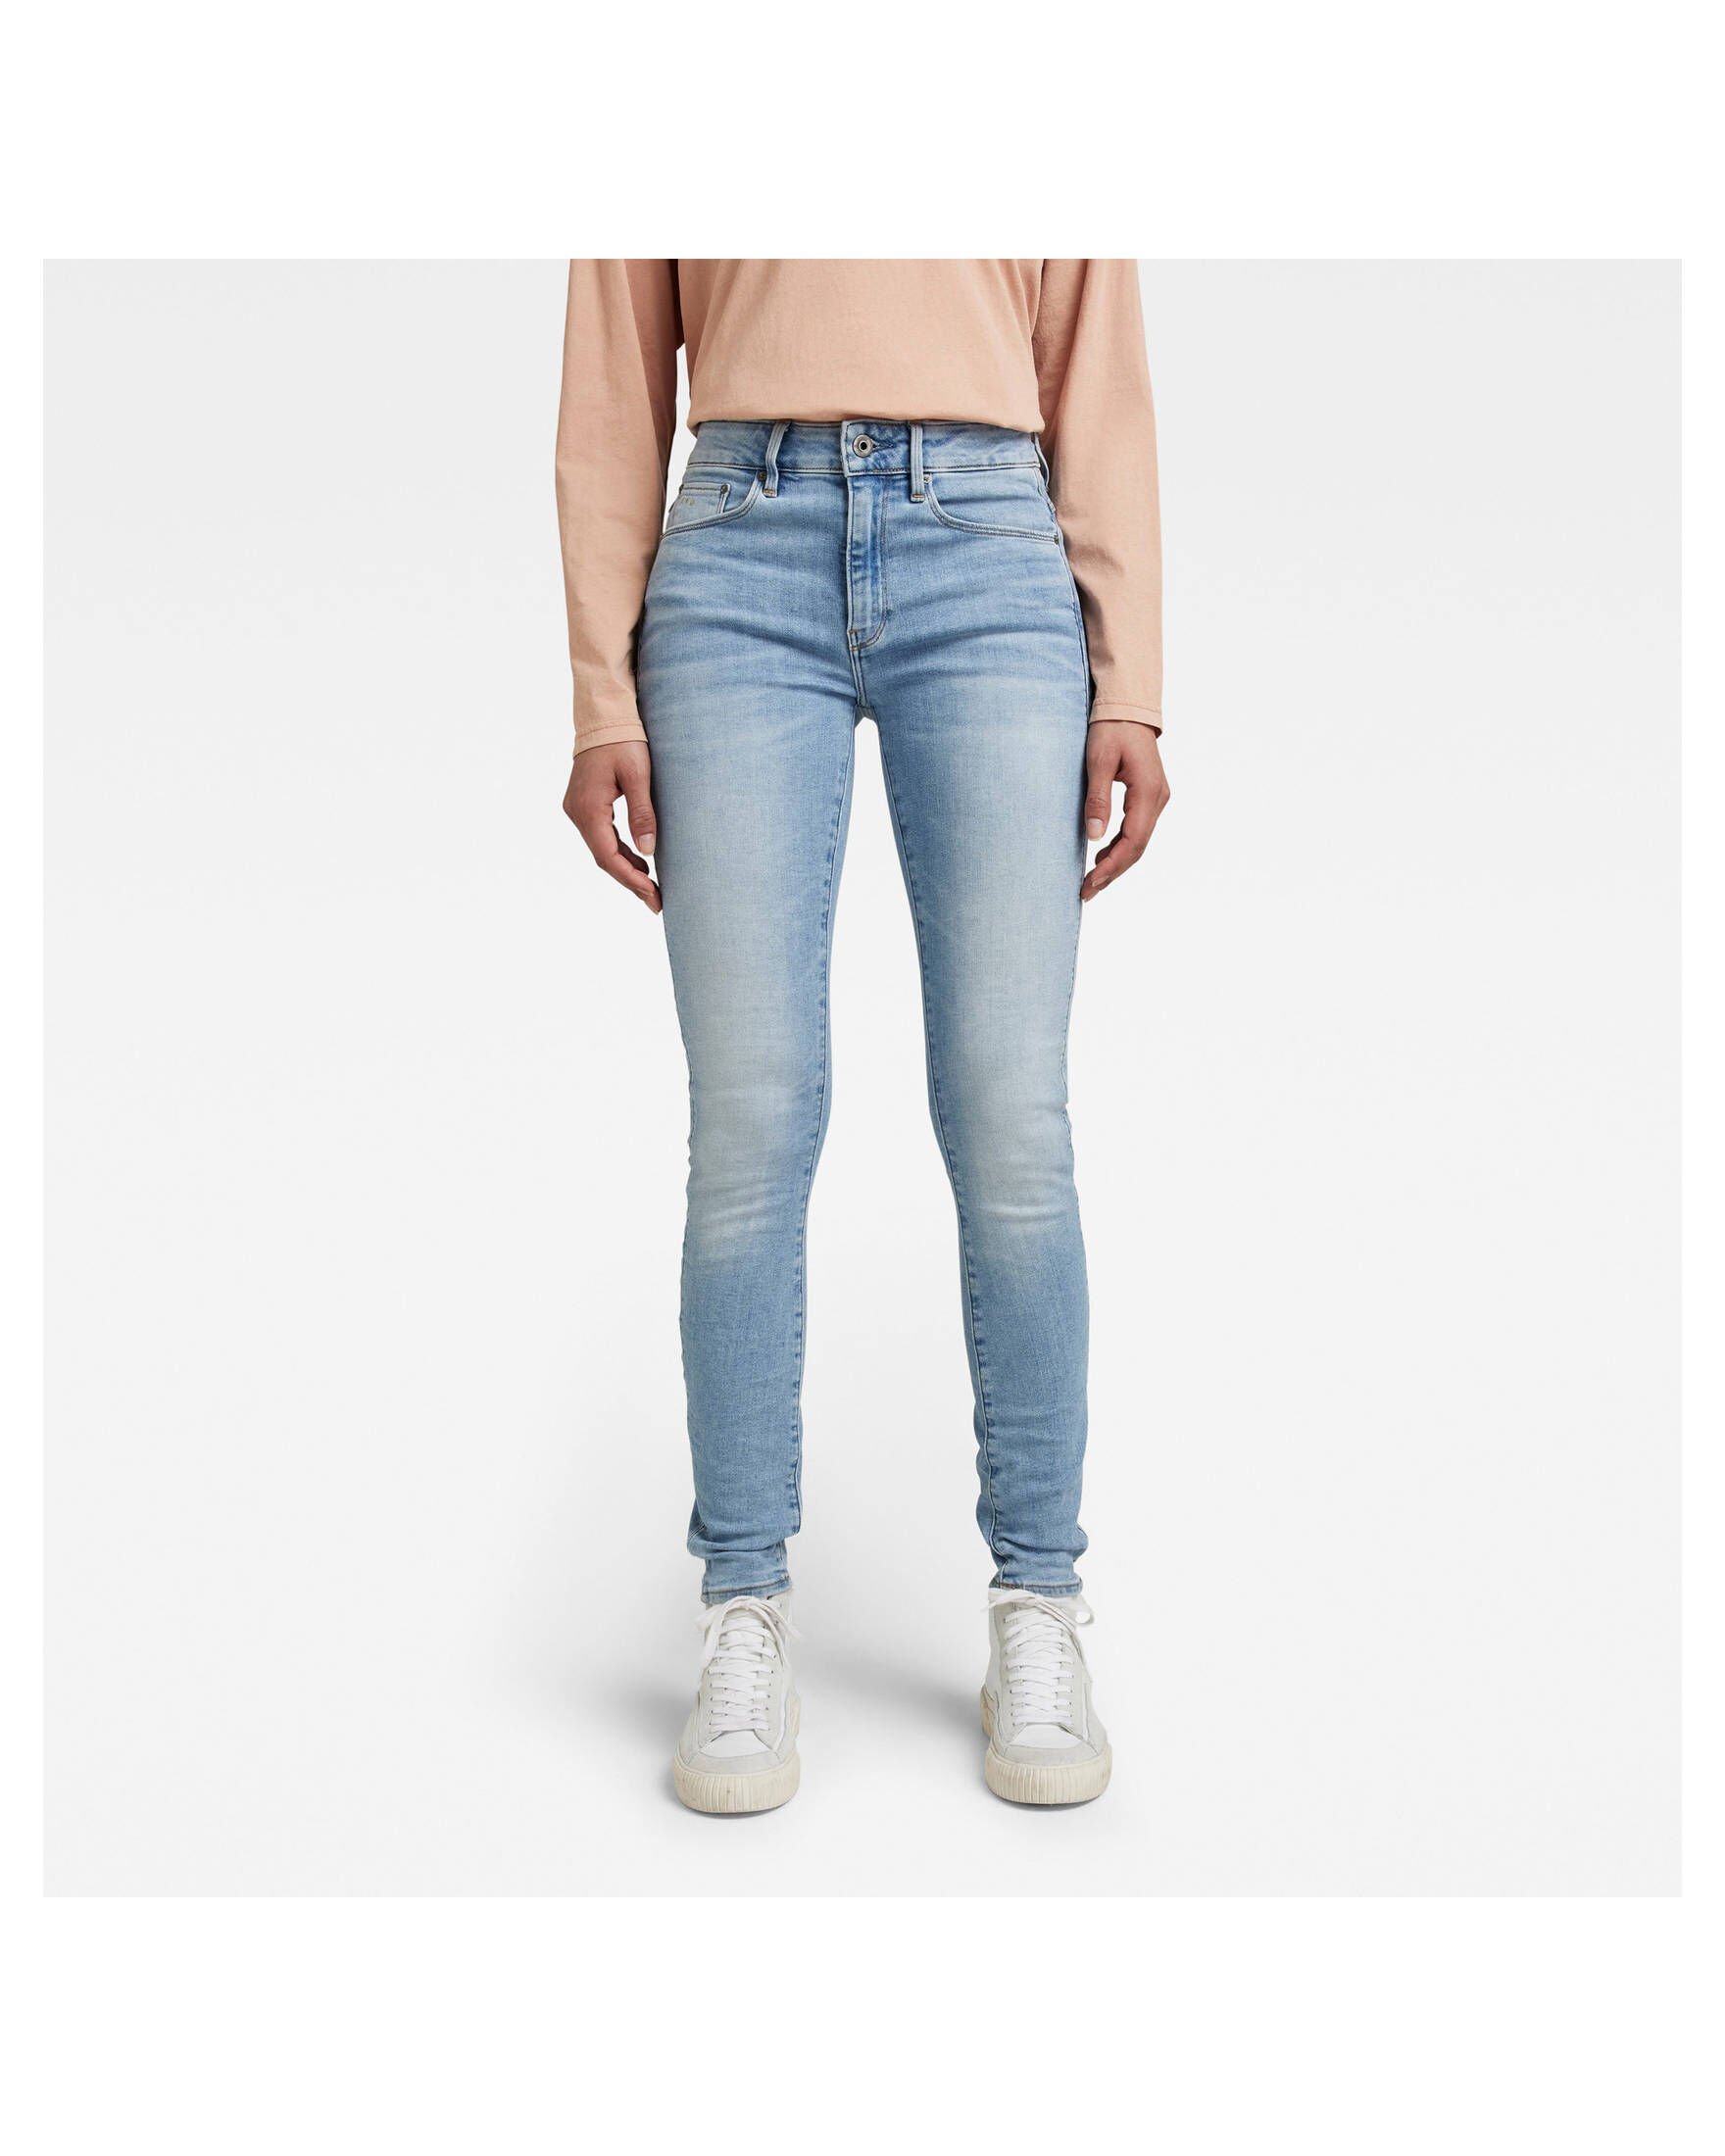 orgaan schending industrie G-Star RAW Damen Jeans 3301 HIGH Skinny Fit kaufen | engelhorn